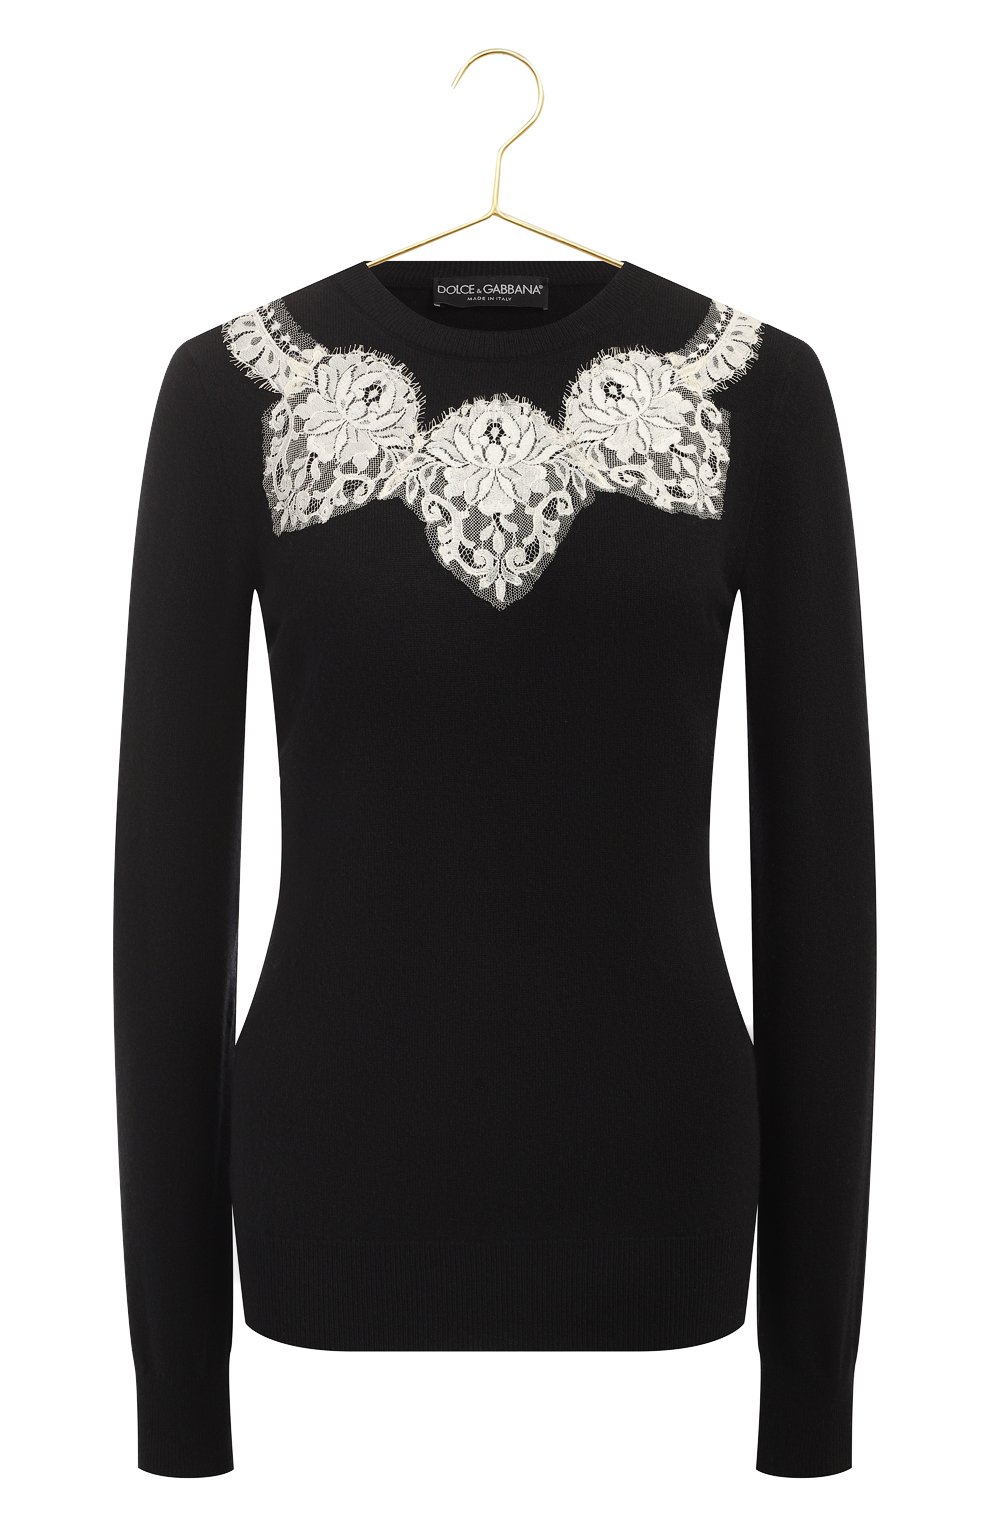 Кашемировый пуловер | Dolce & Gabbana | Чёрный - 1